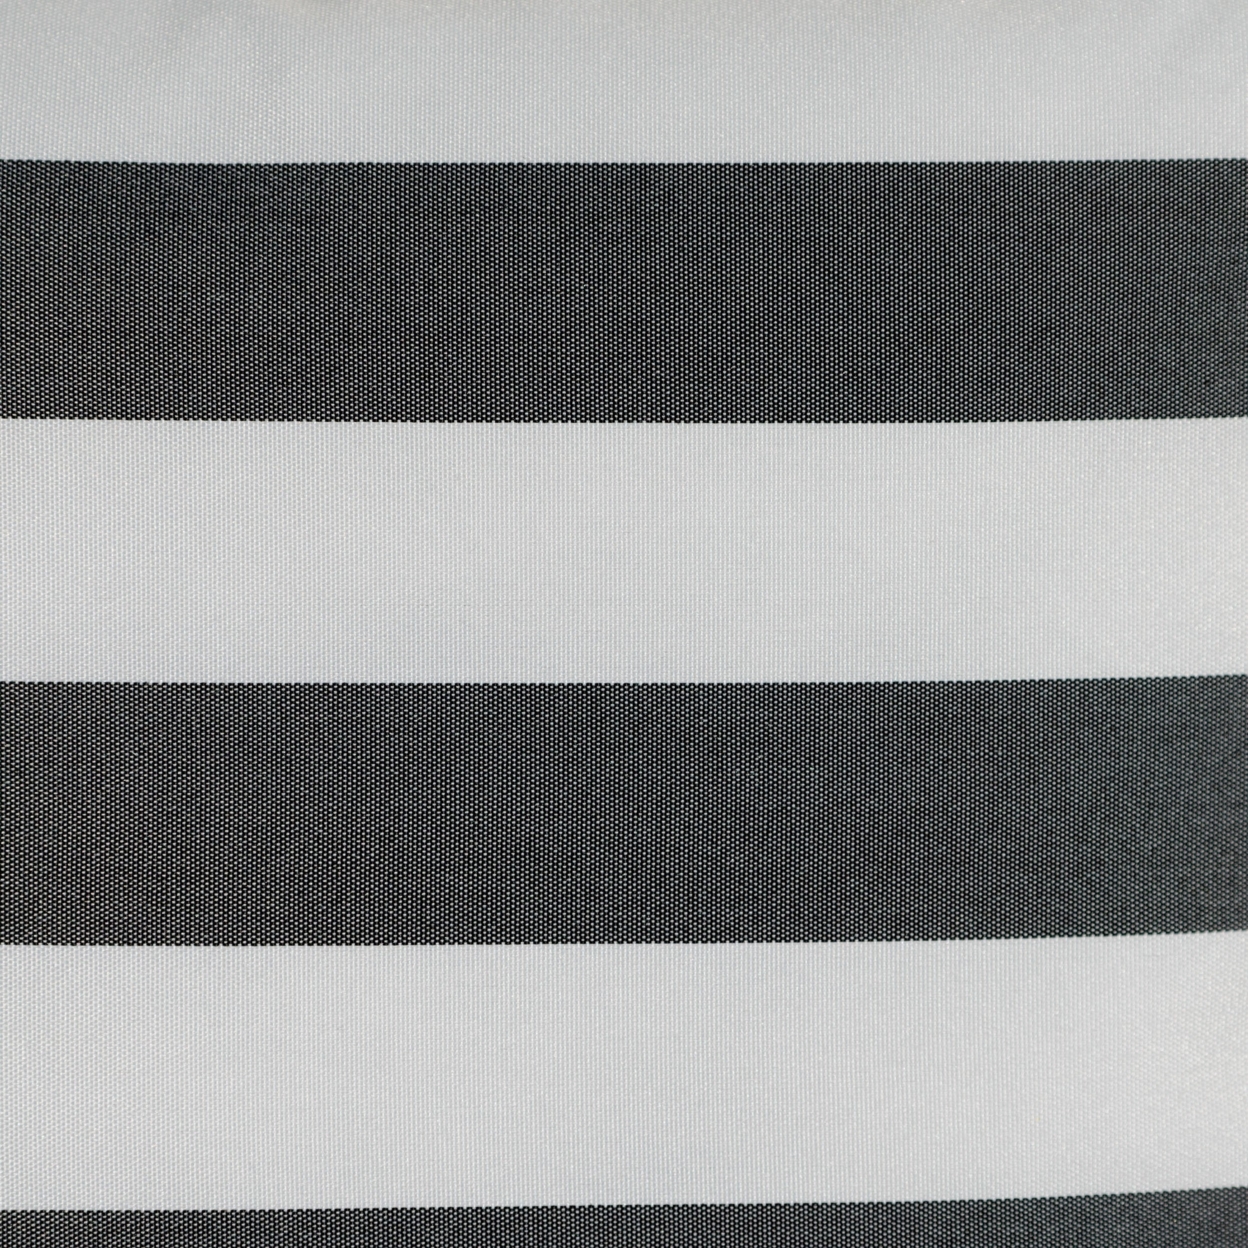 Coronado Outdoor Stripe Water Resistant Square Throw Pillow - Green/white, Set Of 2